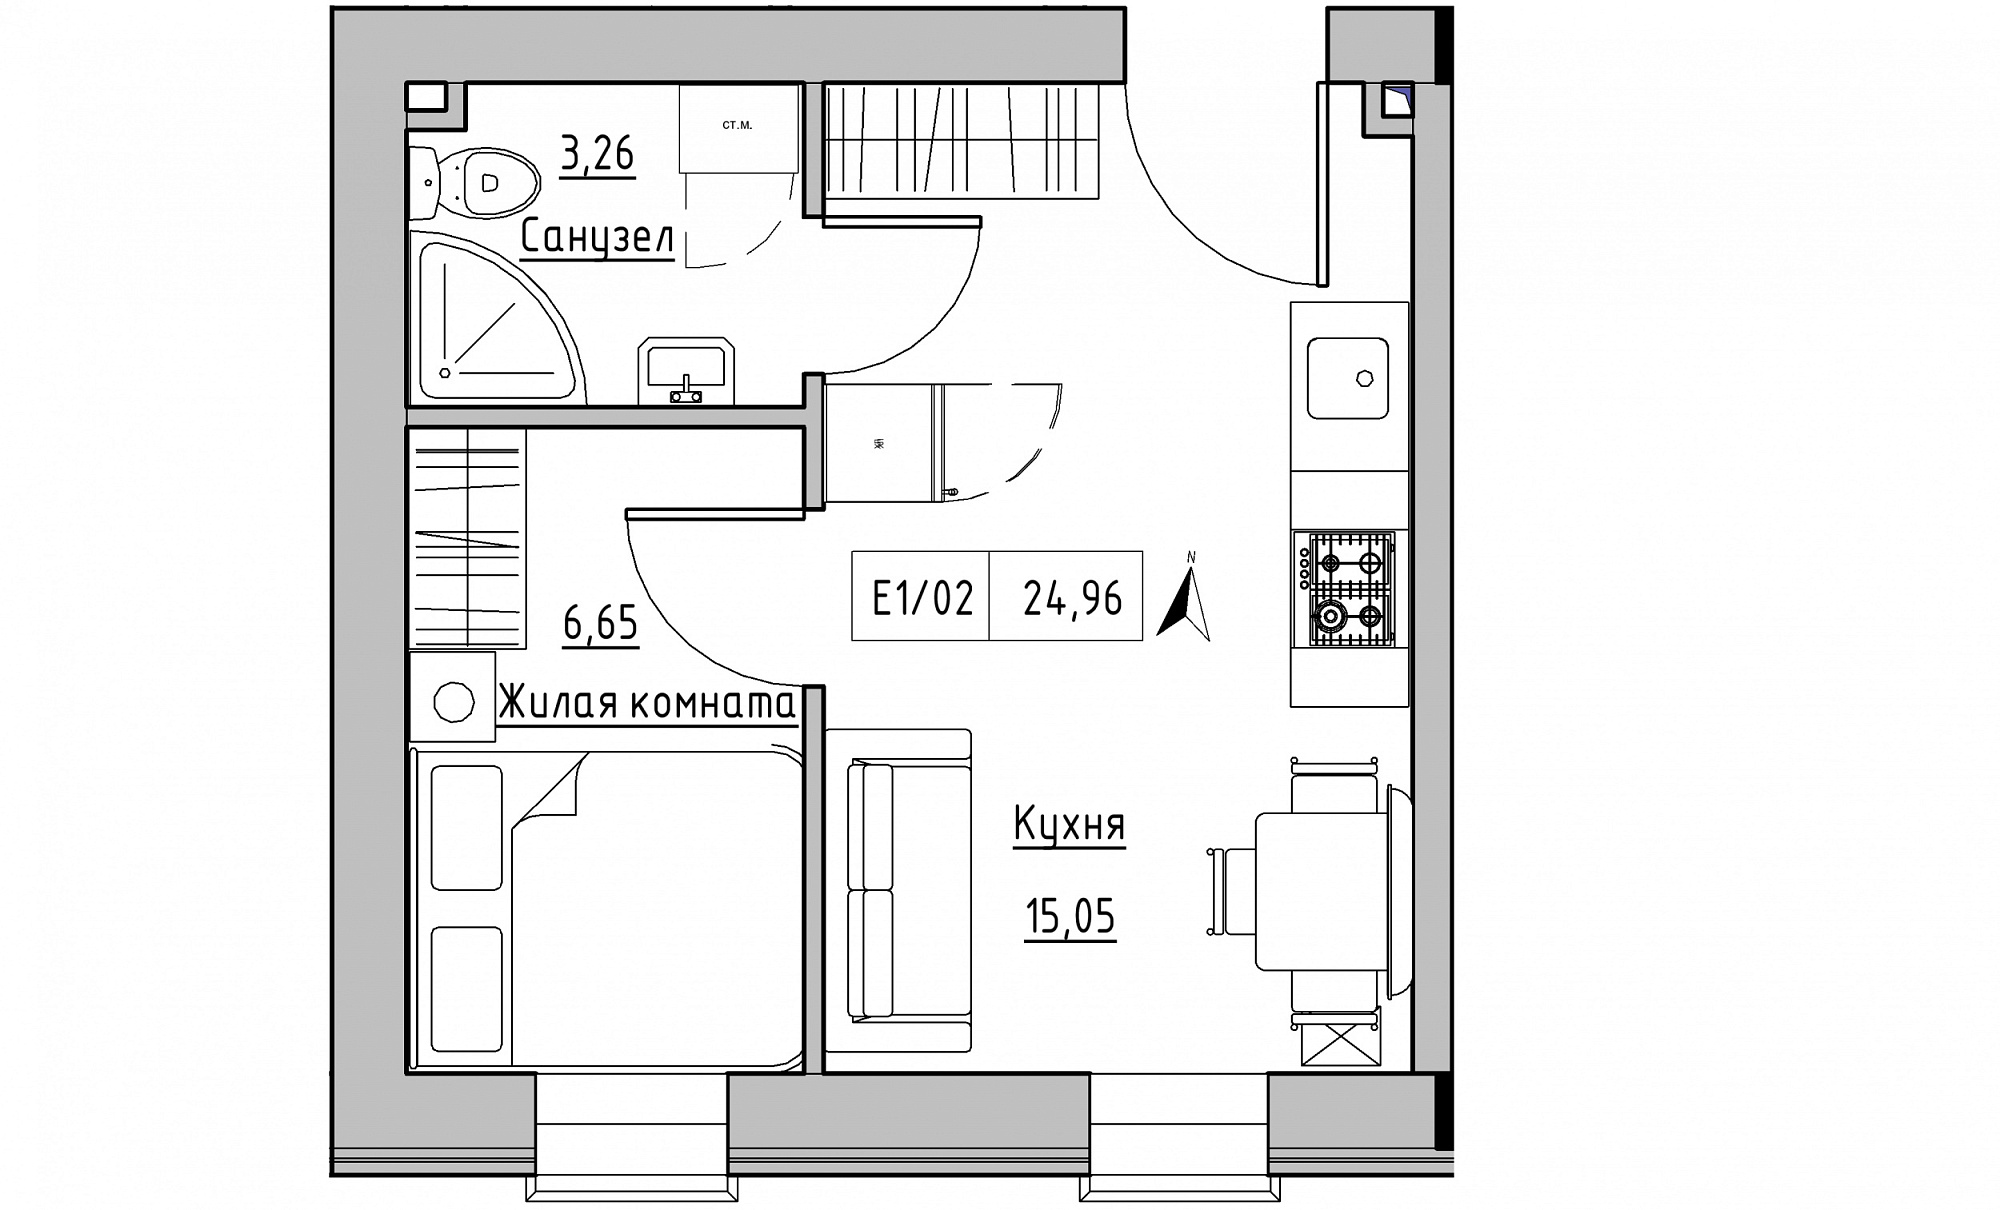 Планировка 1-к квартира площей 24.96м2, KS-015-04/0012.